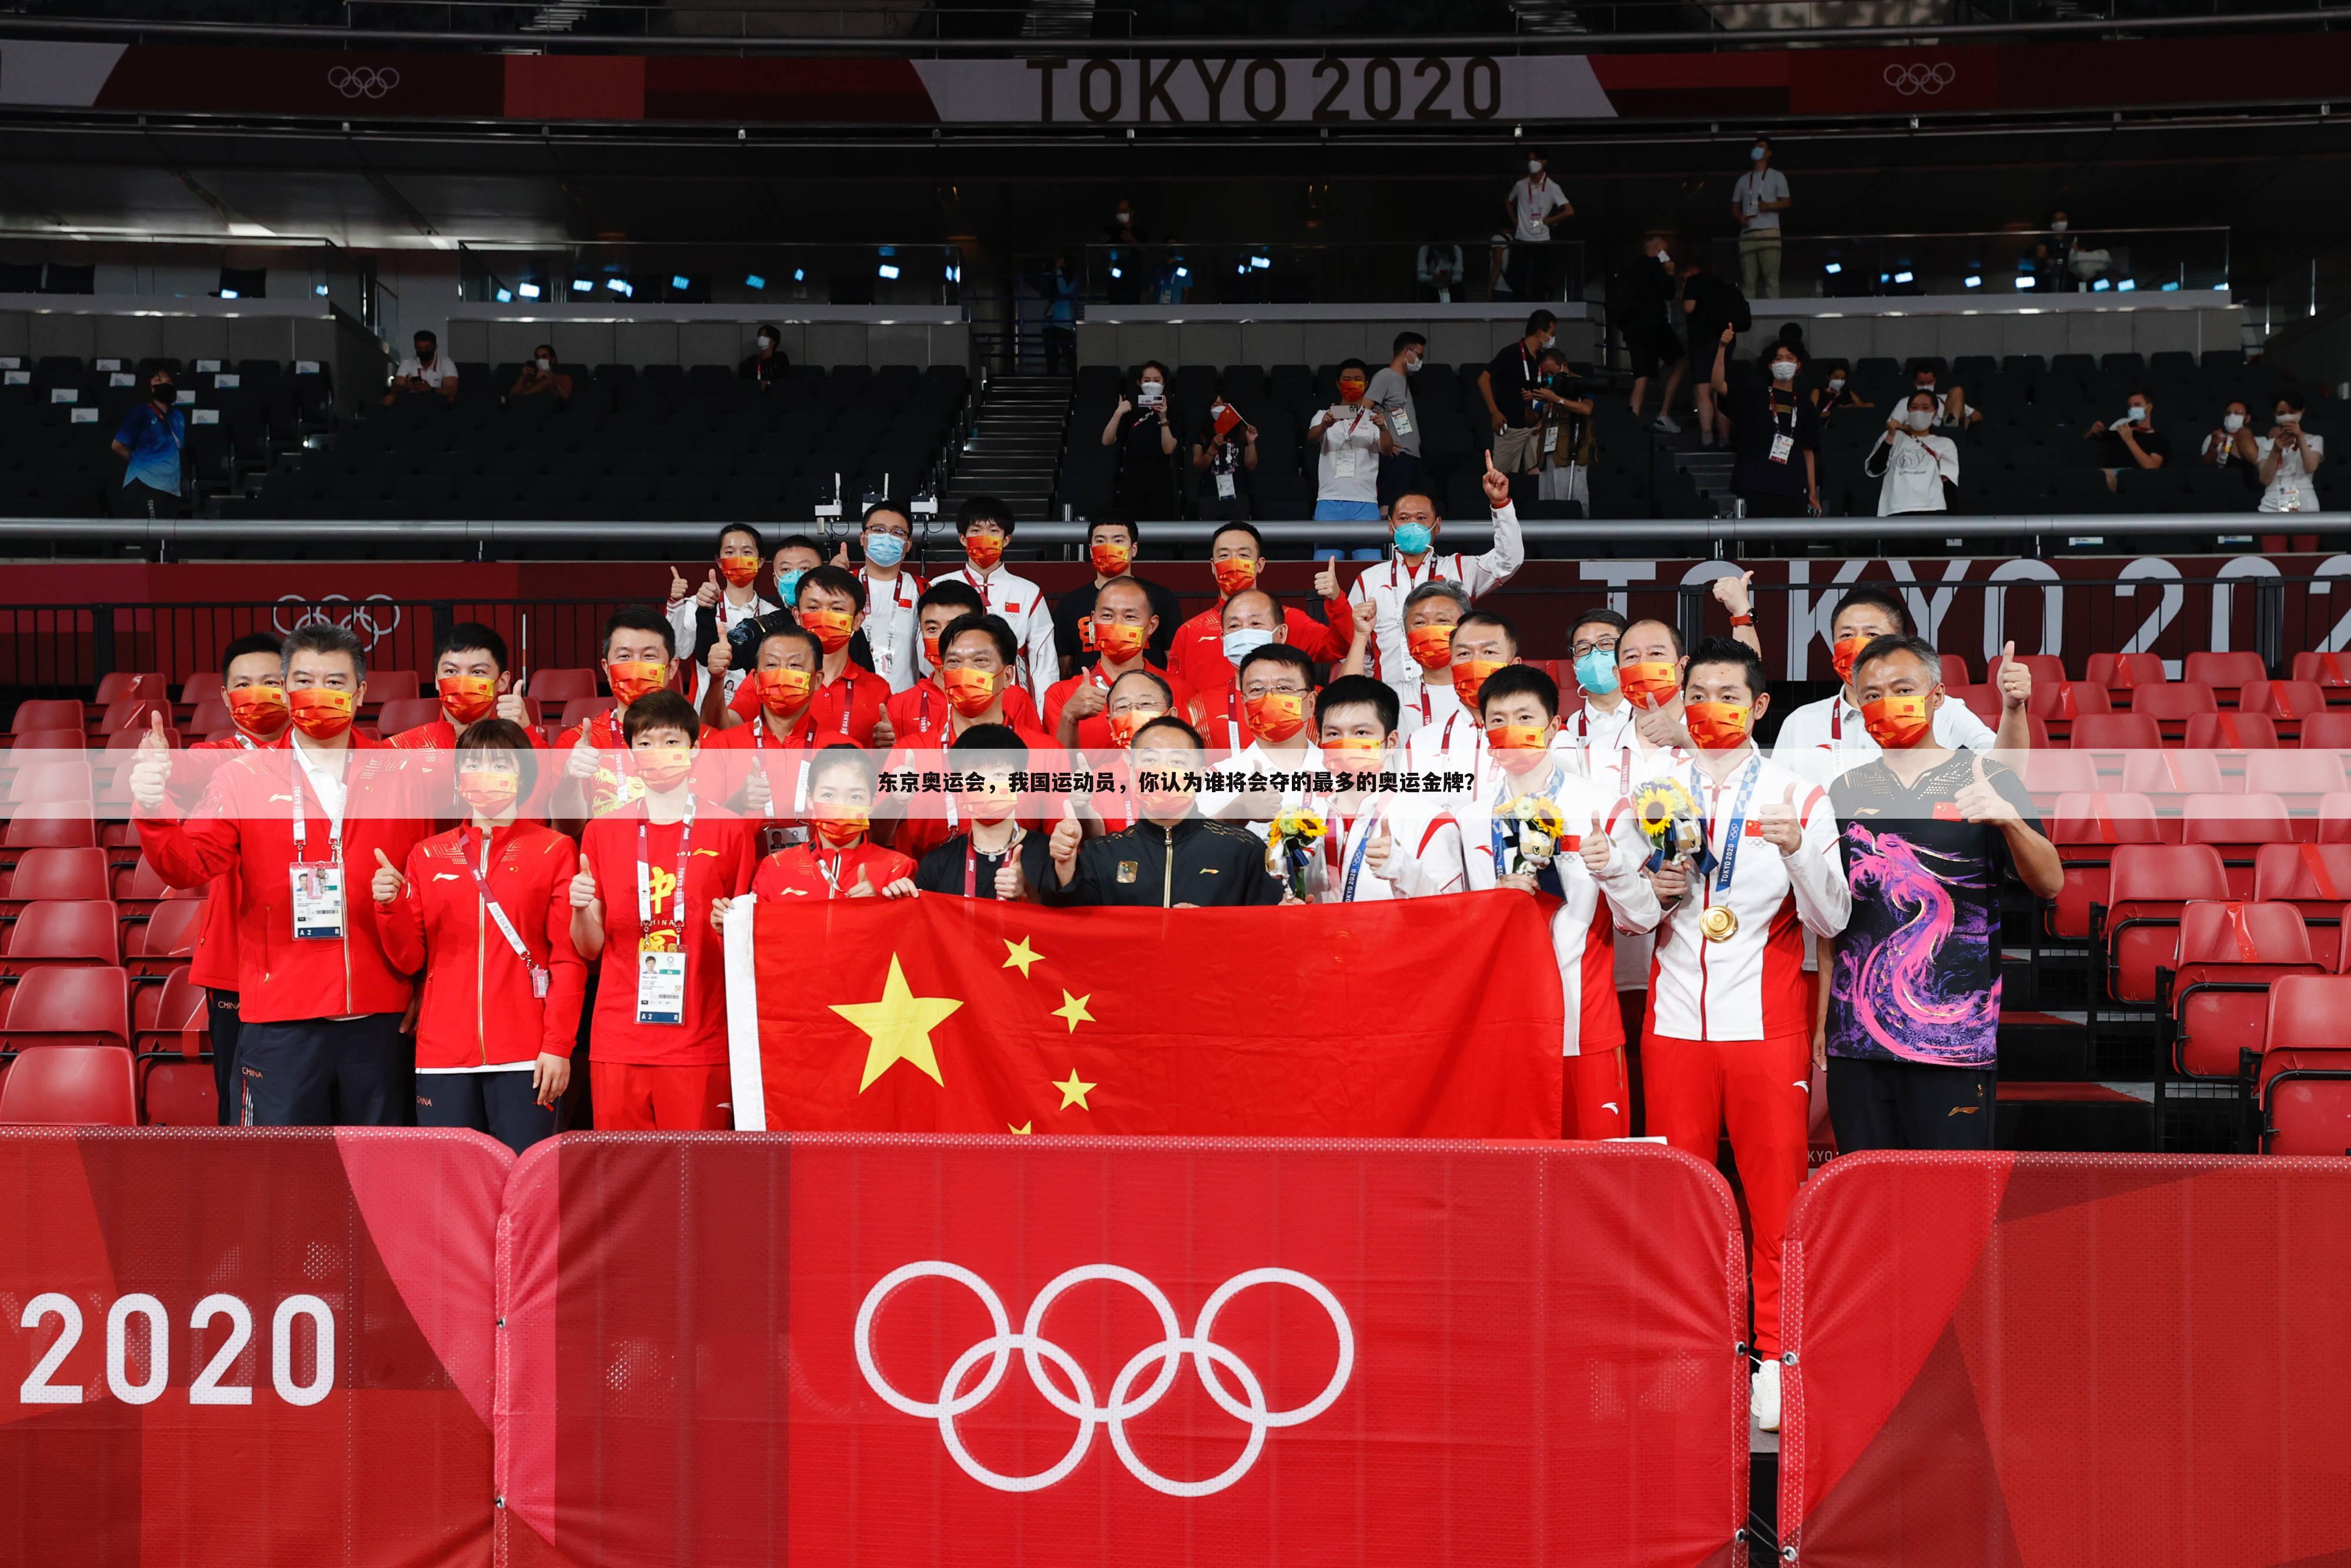 ﹝中国奥运会奖牌﹞中国奥运会奖牌最多的运动员是谁